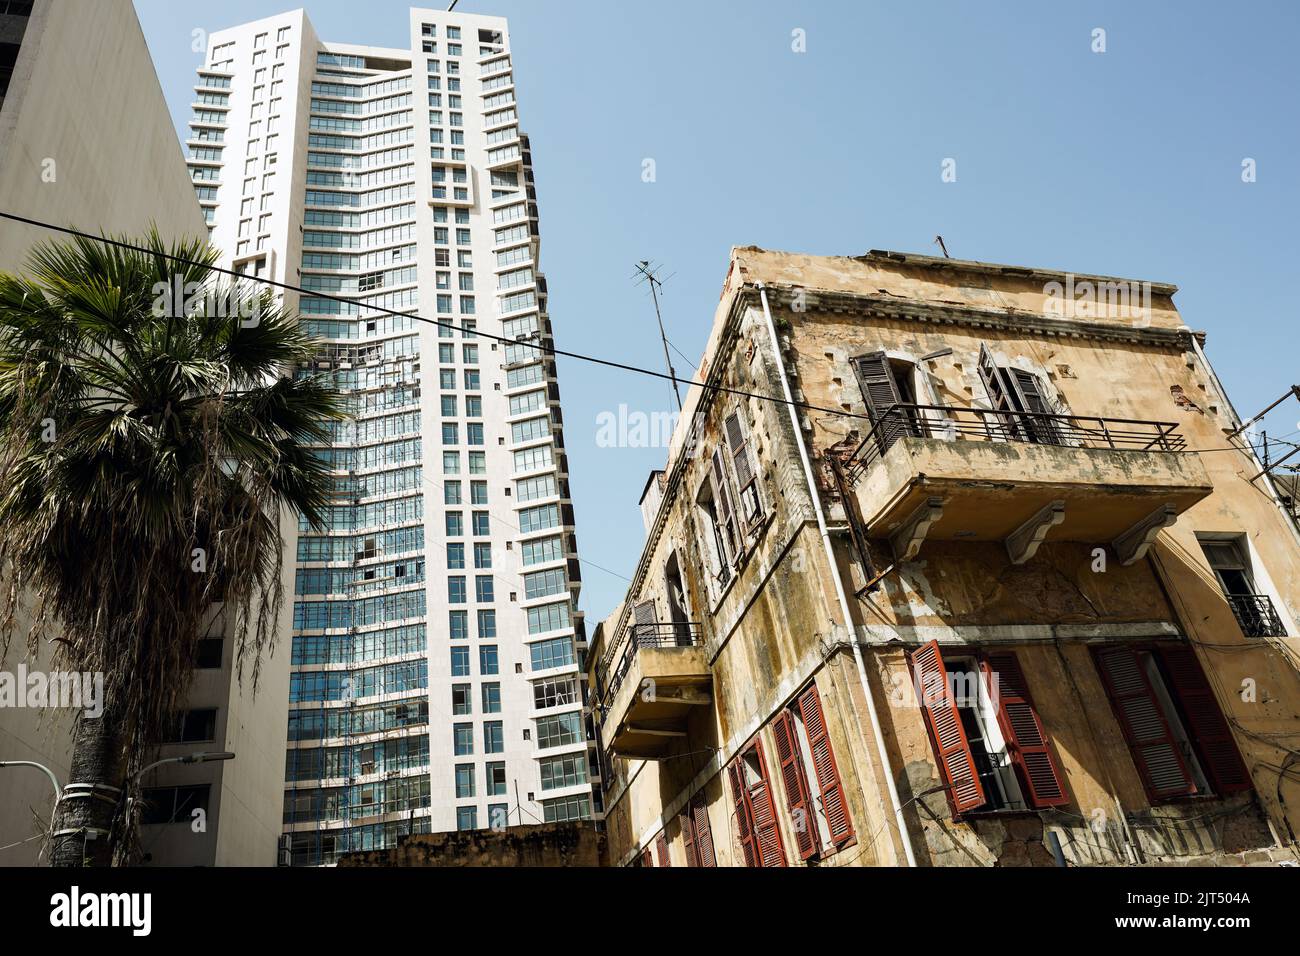 Casa (rechts) en el centro de la ciudad dañada por la explosión masiva del 4 de agosto de 2020 en el puerto de Beirut, Líbano, Oriente Medio Foto de stock